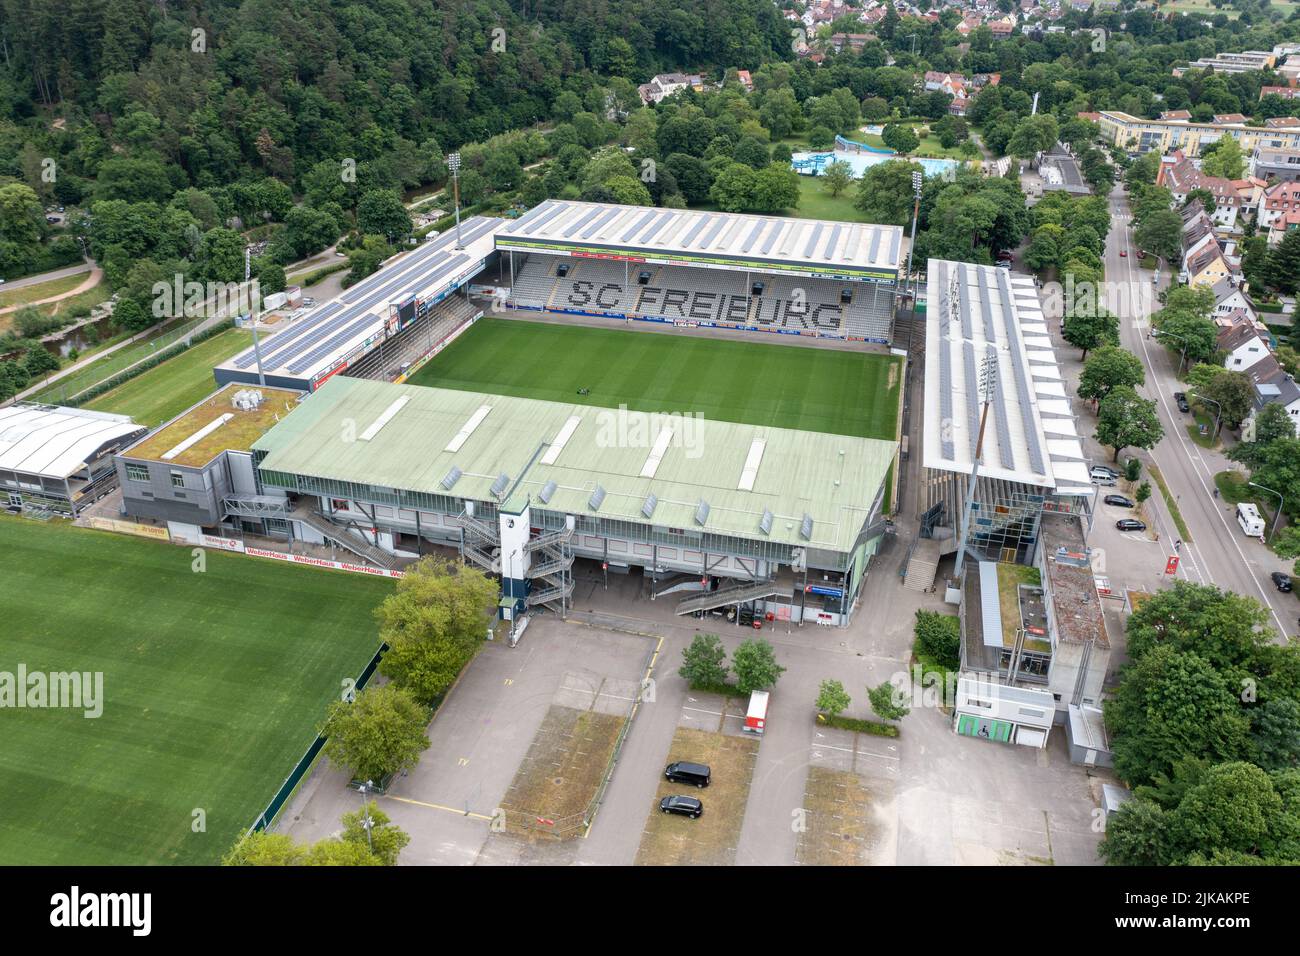 Stade Dreisamstadion, stade de l'équipe de football professionnelle de SC Freiburg, Fribourg, Allemagne Banque D'Images